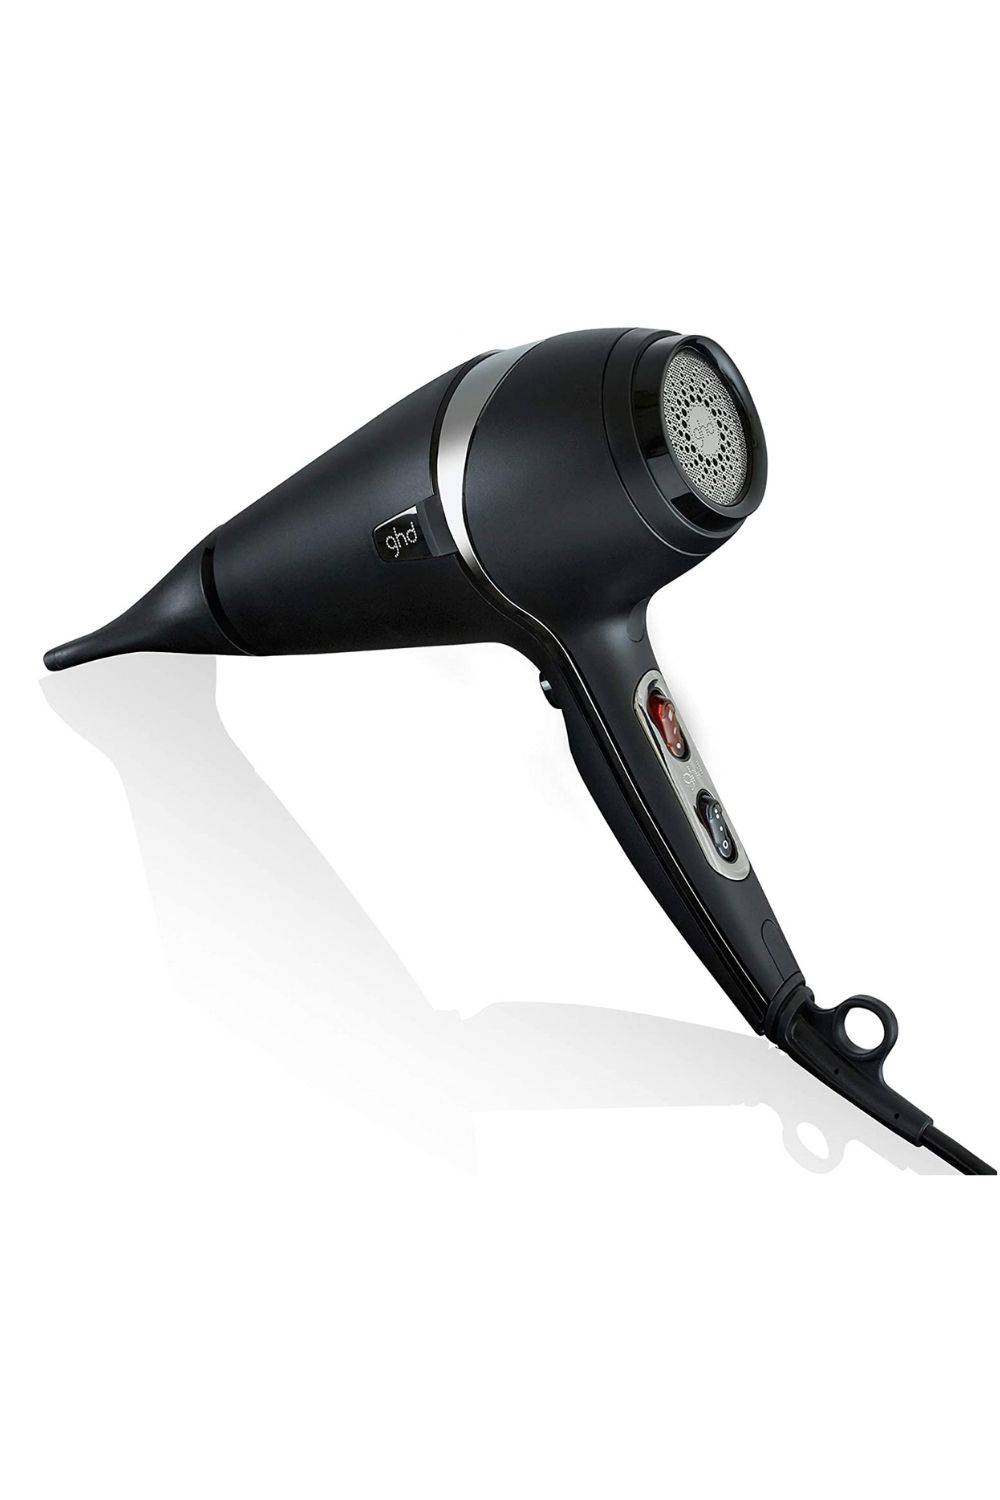 ghd air - Secador de pelo profesional con tecnología iónica, color negro